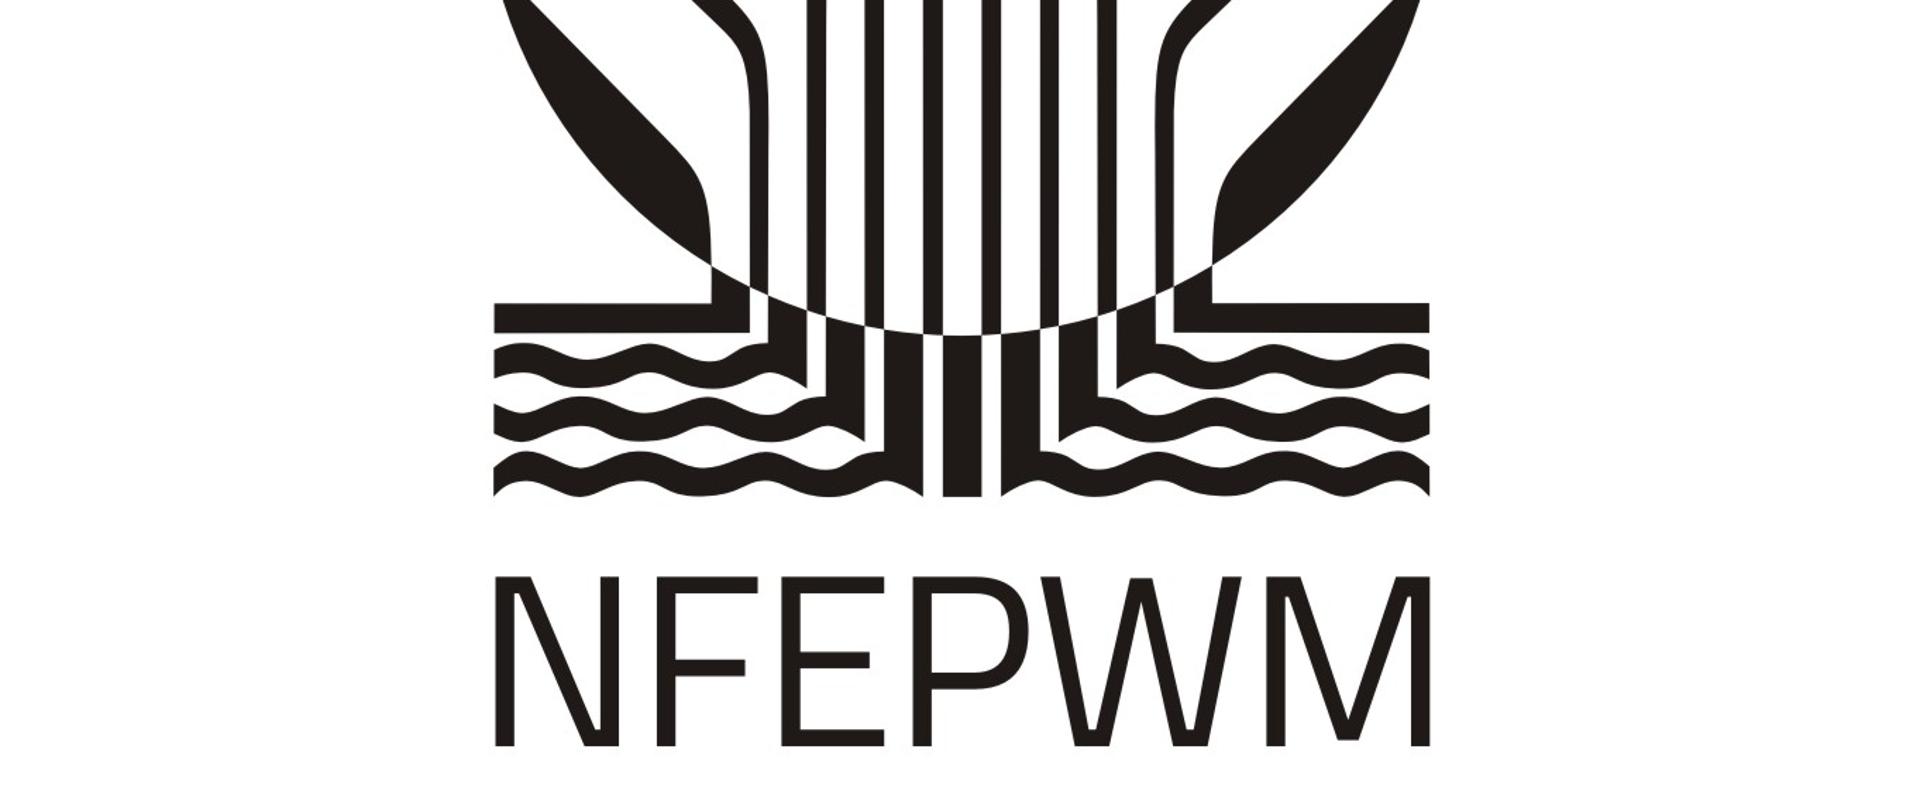 Logotyp NFOŚiGW - pion - skrót - mono - wersja anglojęzyczna